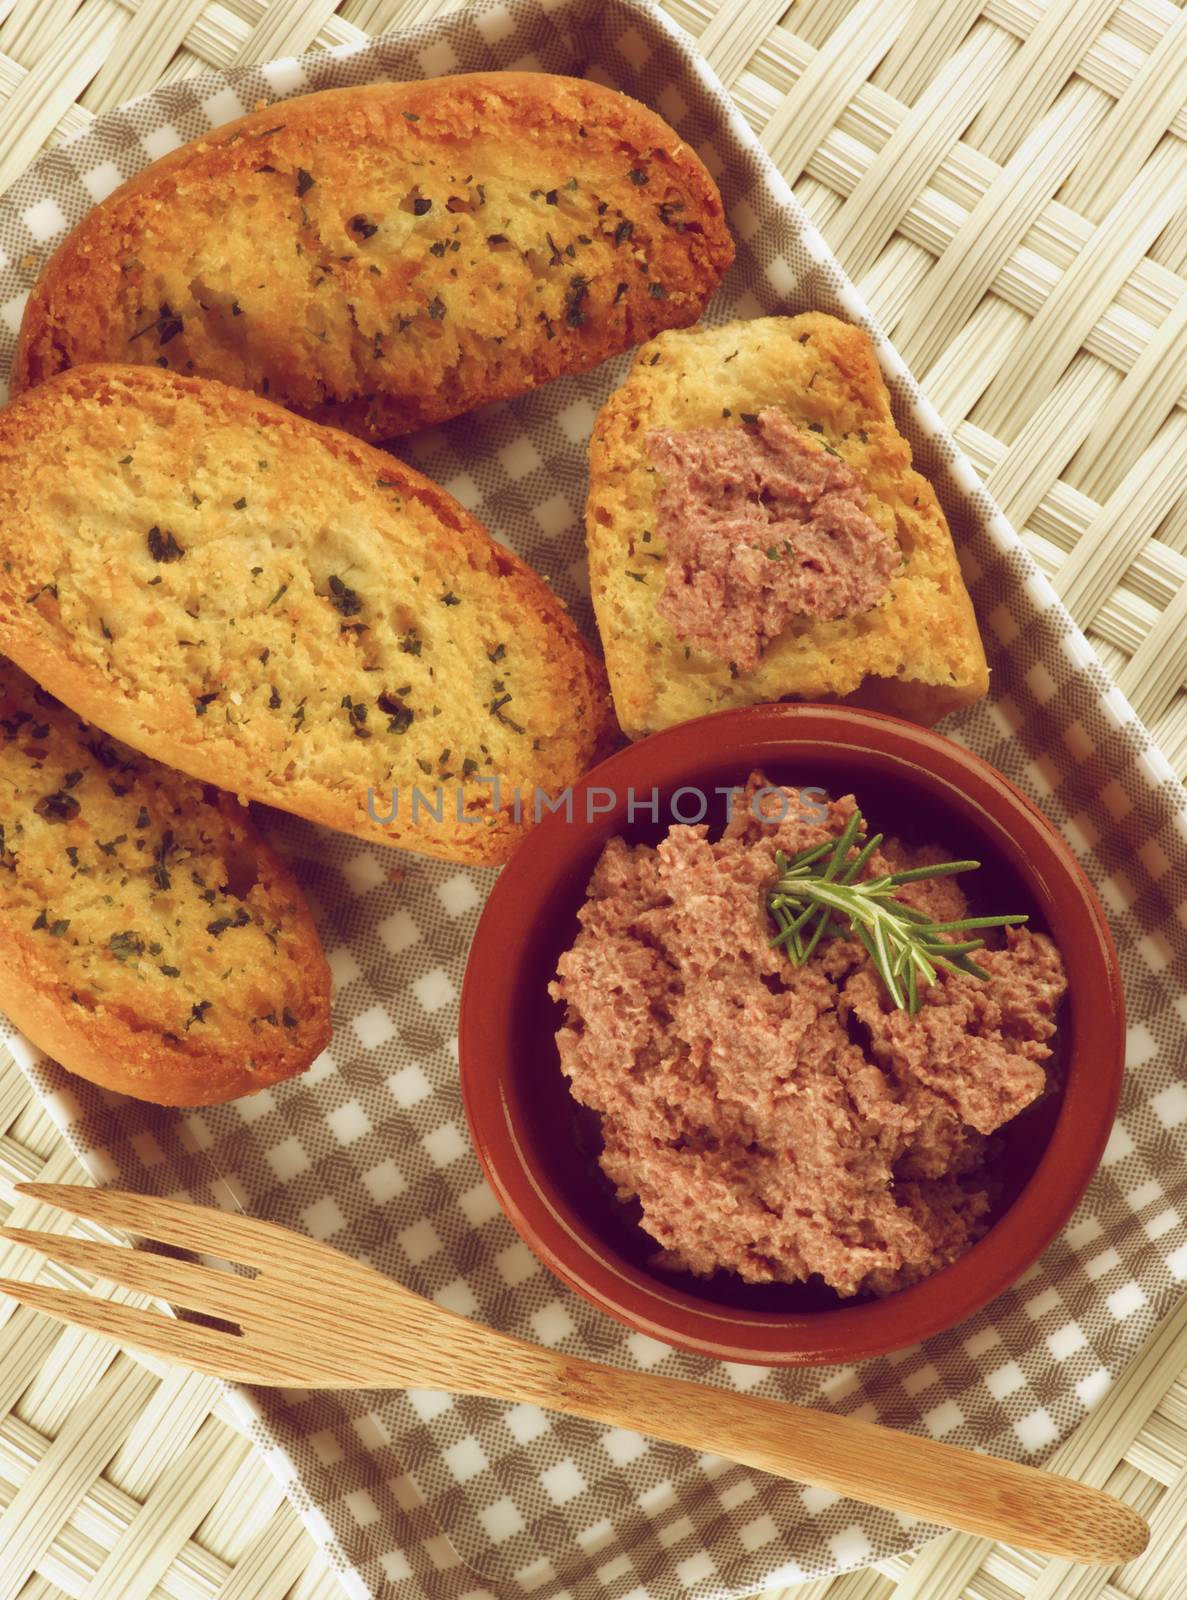 Pate with Crispy Bread by zhekos